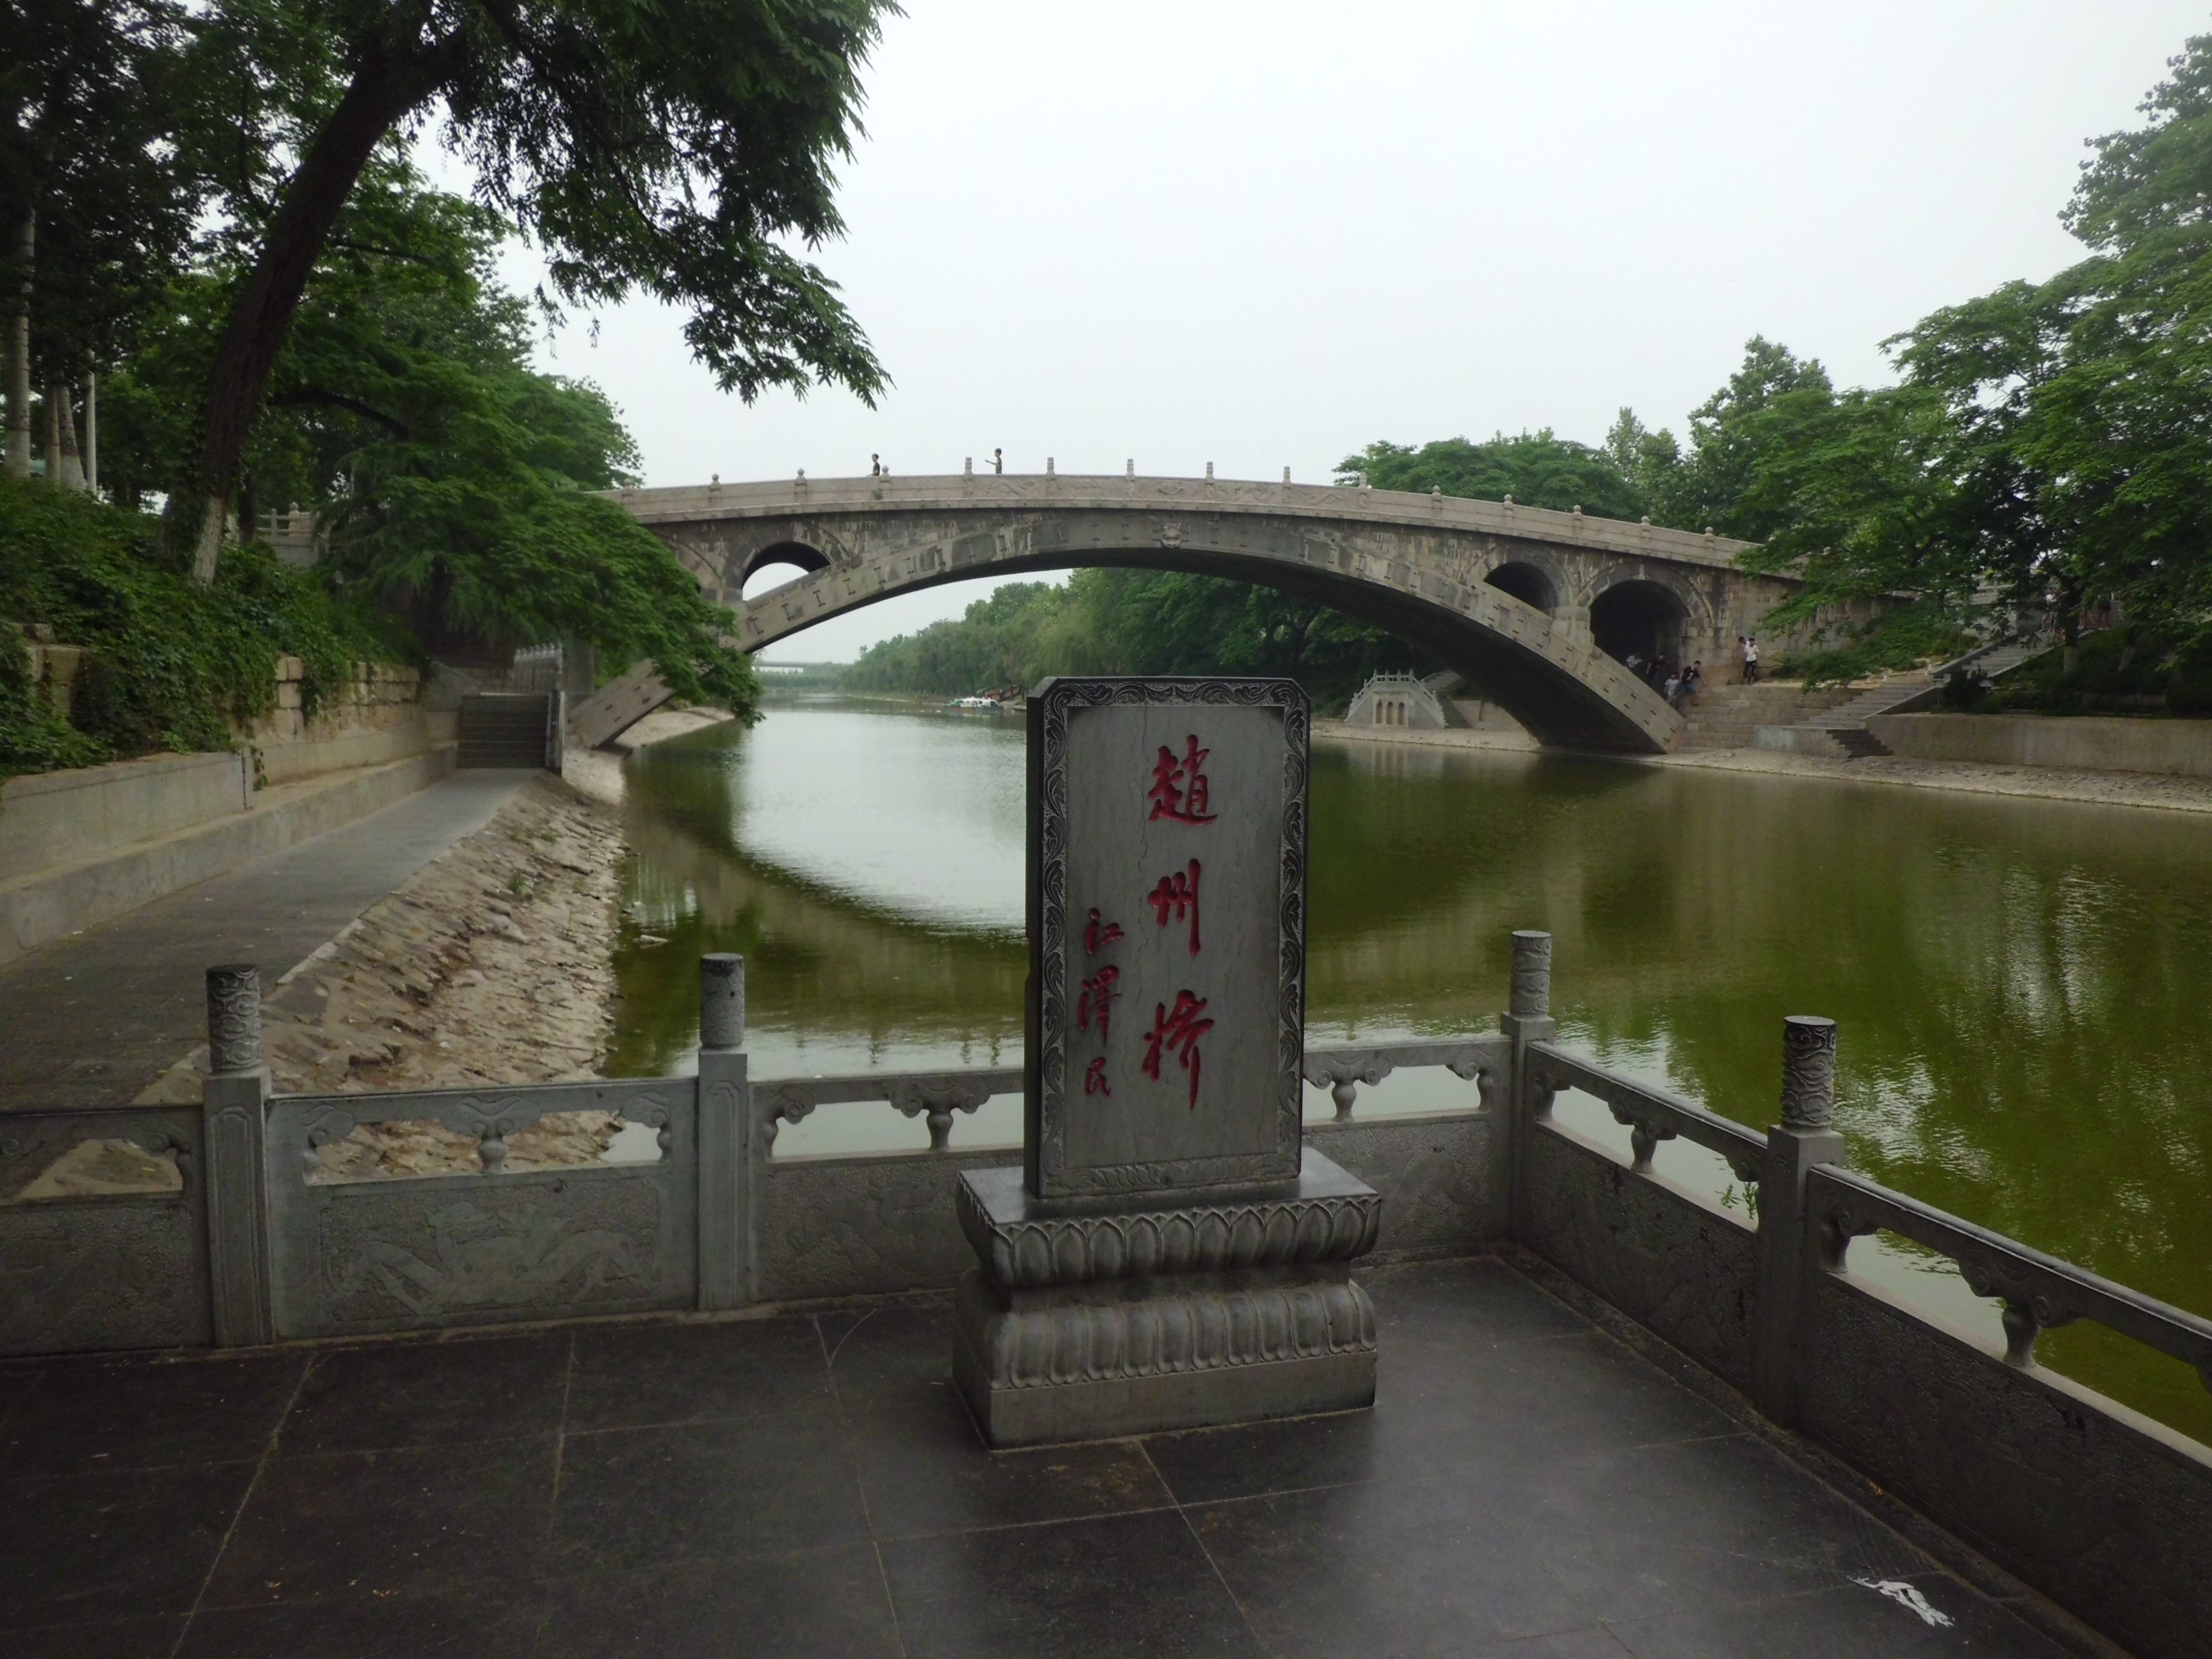 【携程攻略】赵县赵州桥适合单独旅行旅游吗,赵州桥